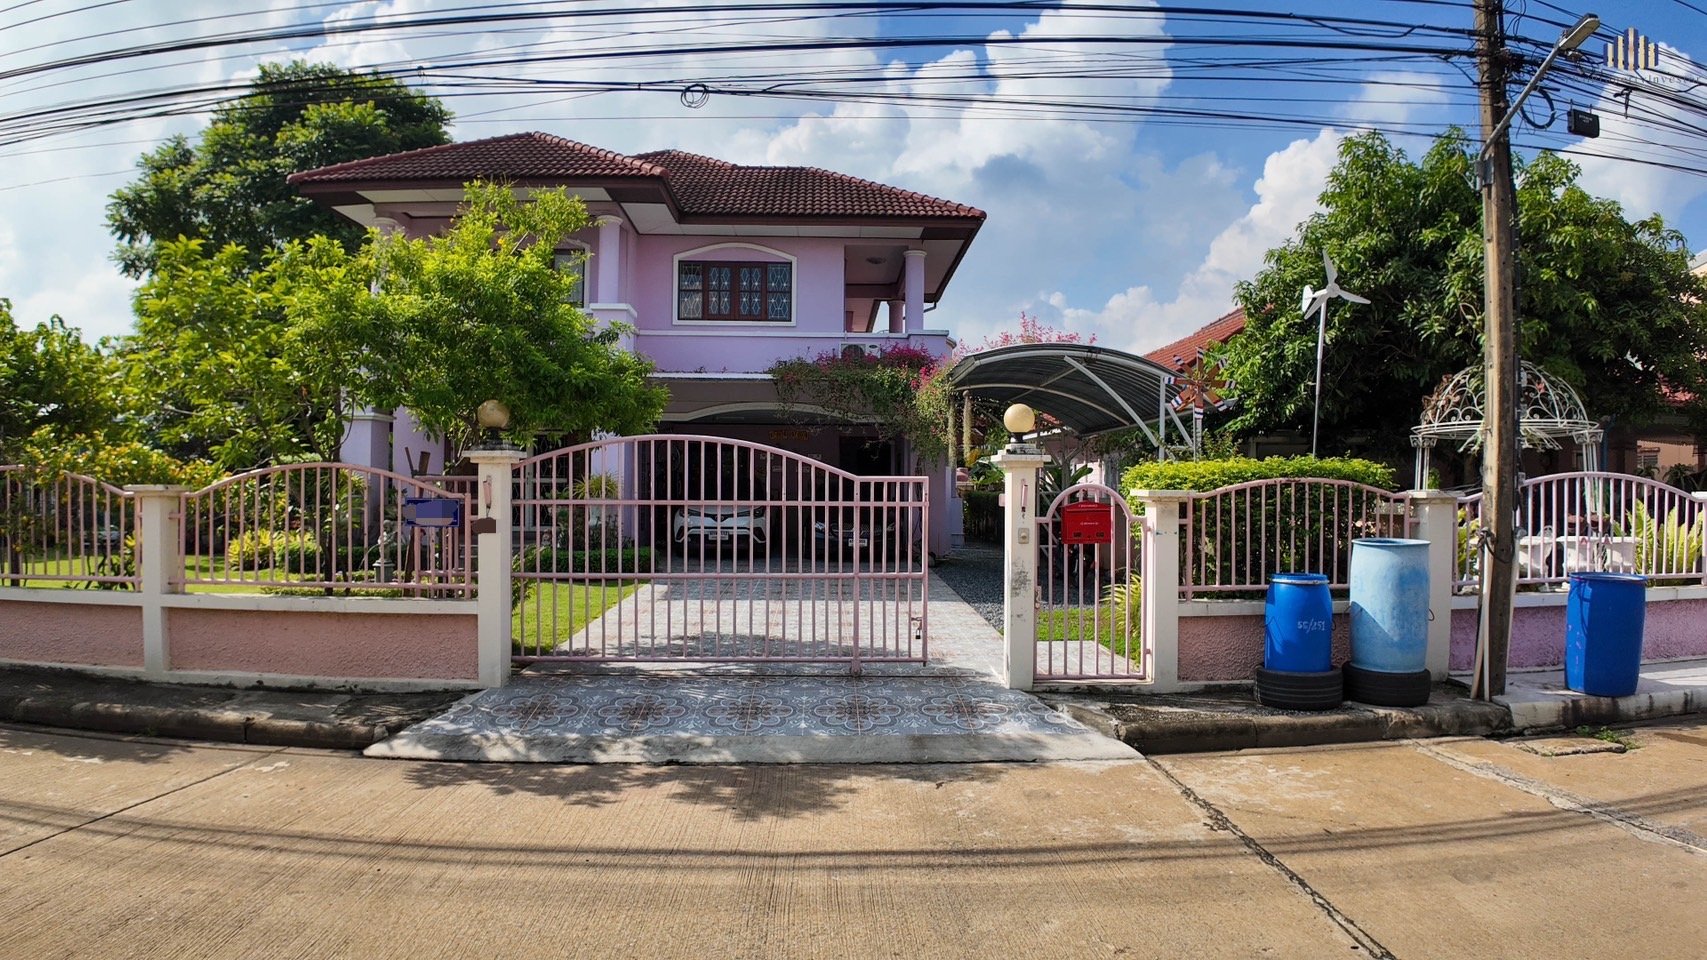 安静，阴凉，空间大，价格优惠！ 出售独栋房屋 Suetrong 村 Don Mueang，Lam Luk Ka，Khlong Song，面积 194 平方哇！ 红线附近 ! Zeer Rangsit 附近 ！近高速公路！紧急出售